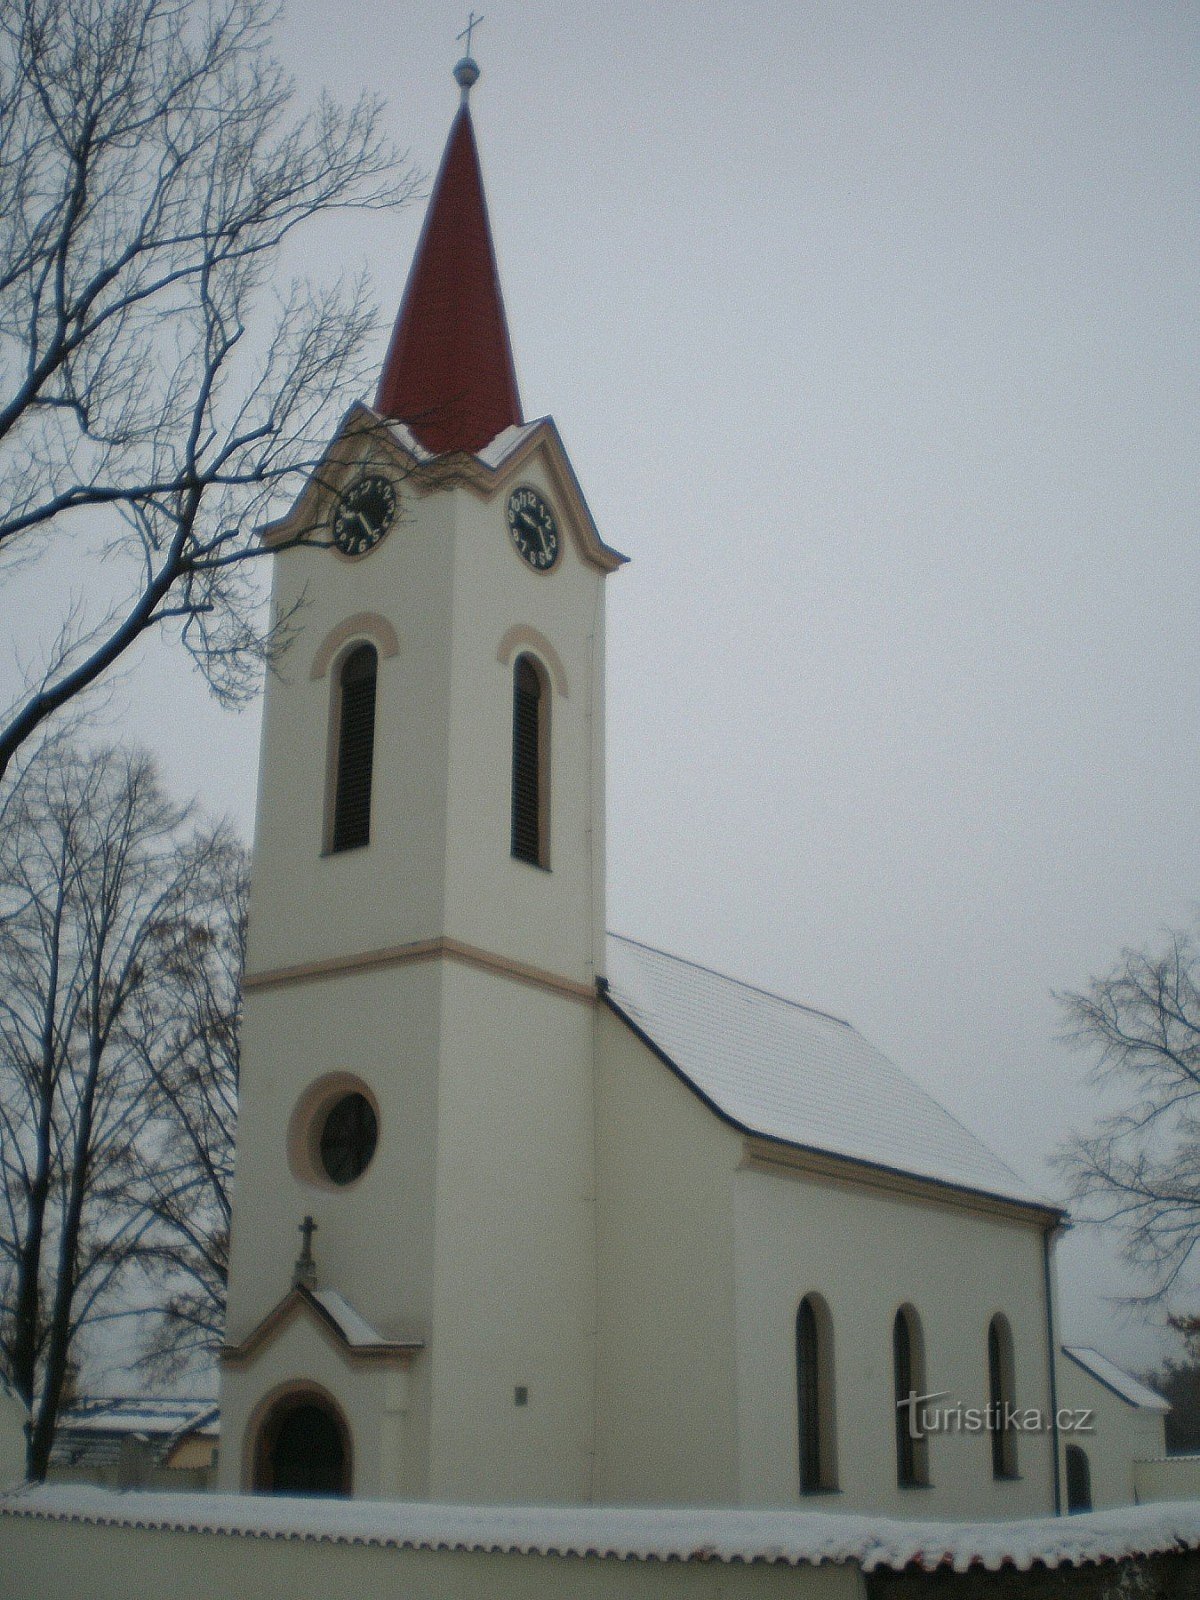 Dubeček - εκκλησία του St. Πέτρος